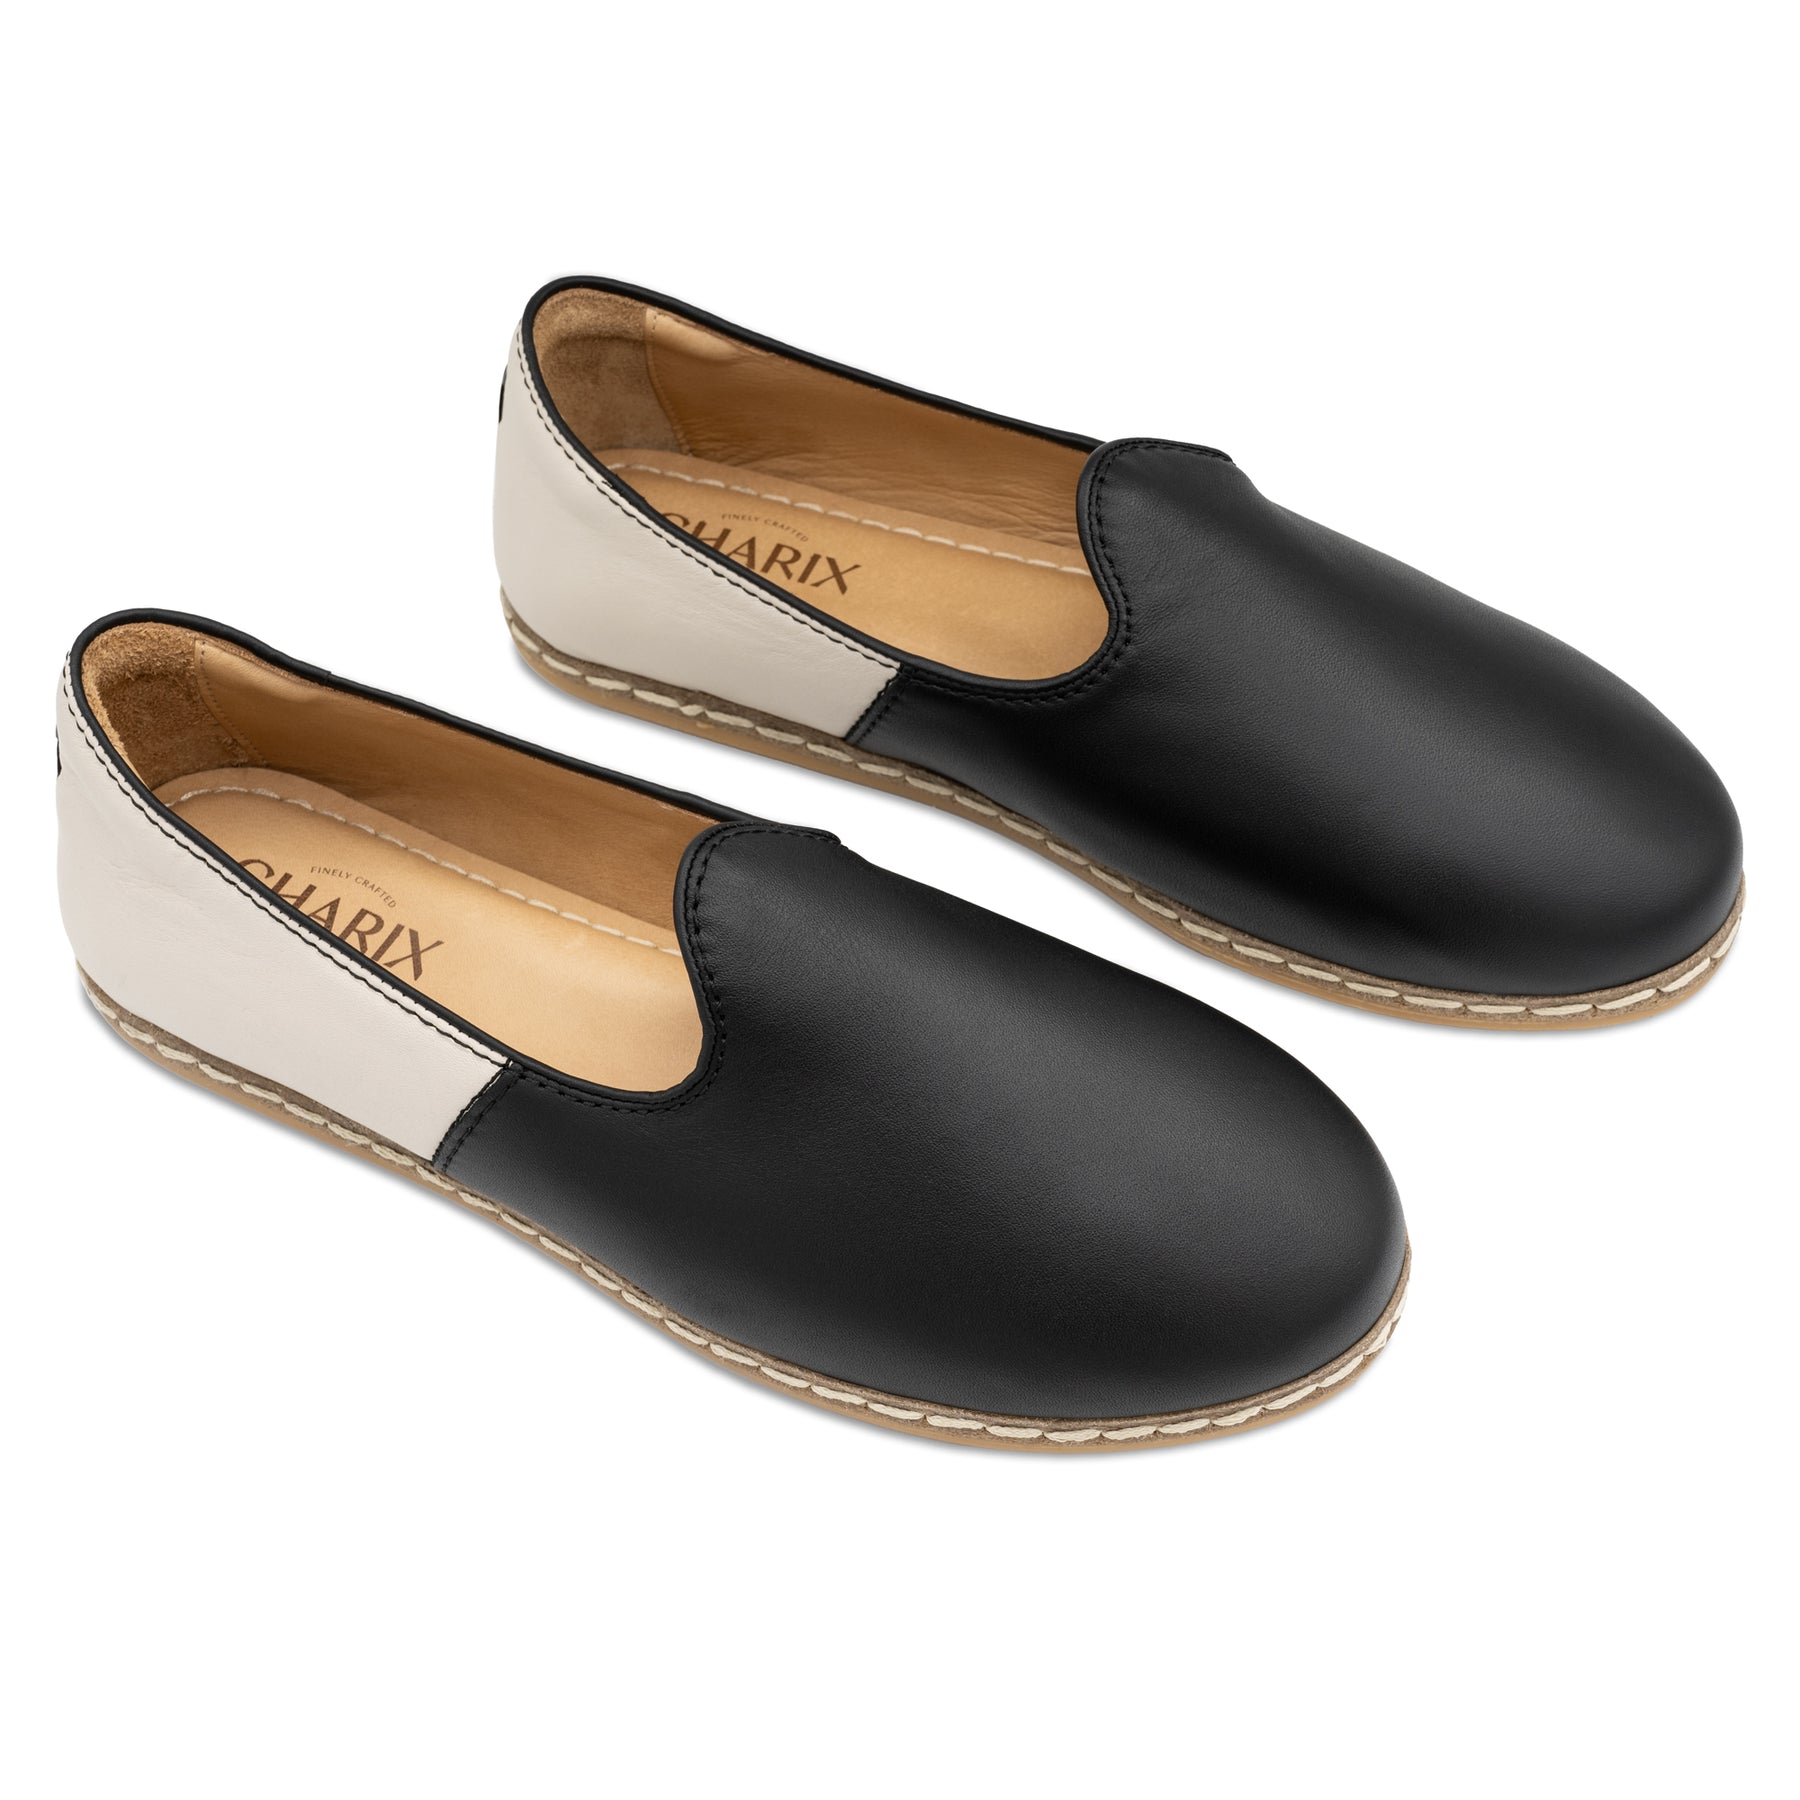 Black & White Slip Ons for Men - Charix Shoes